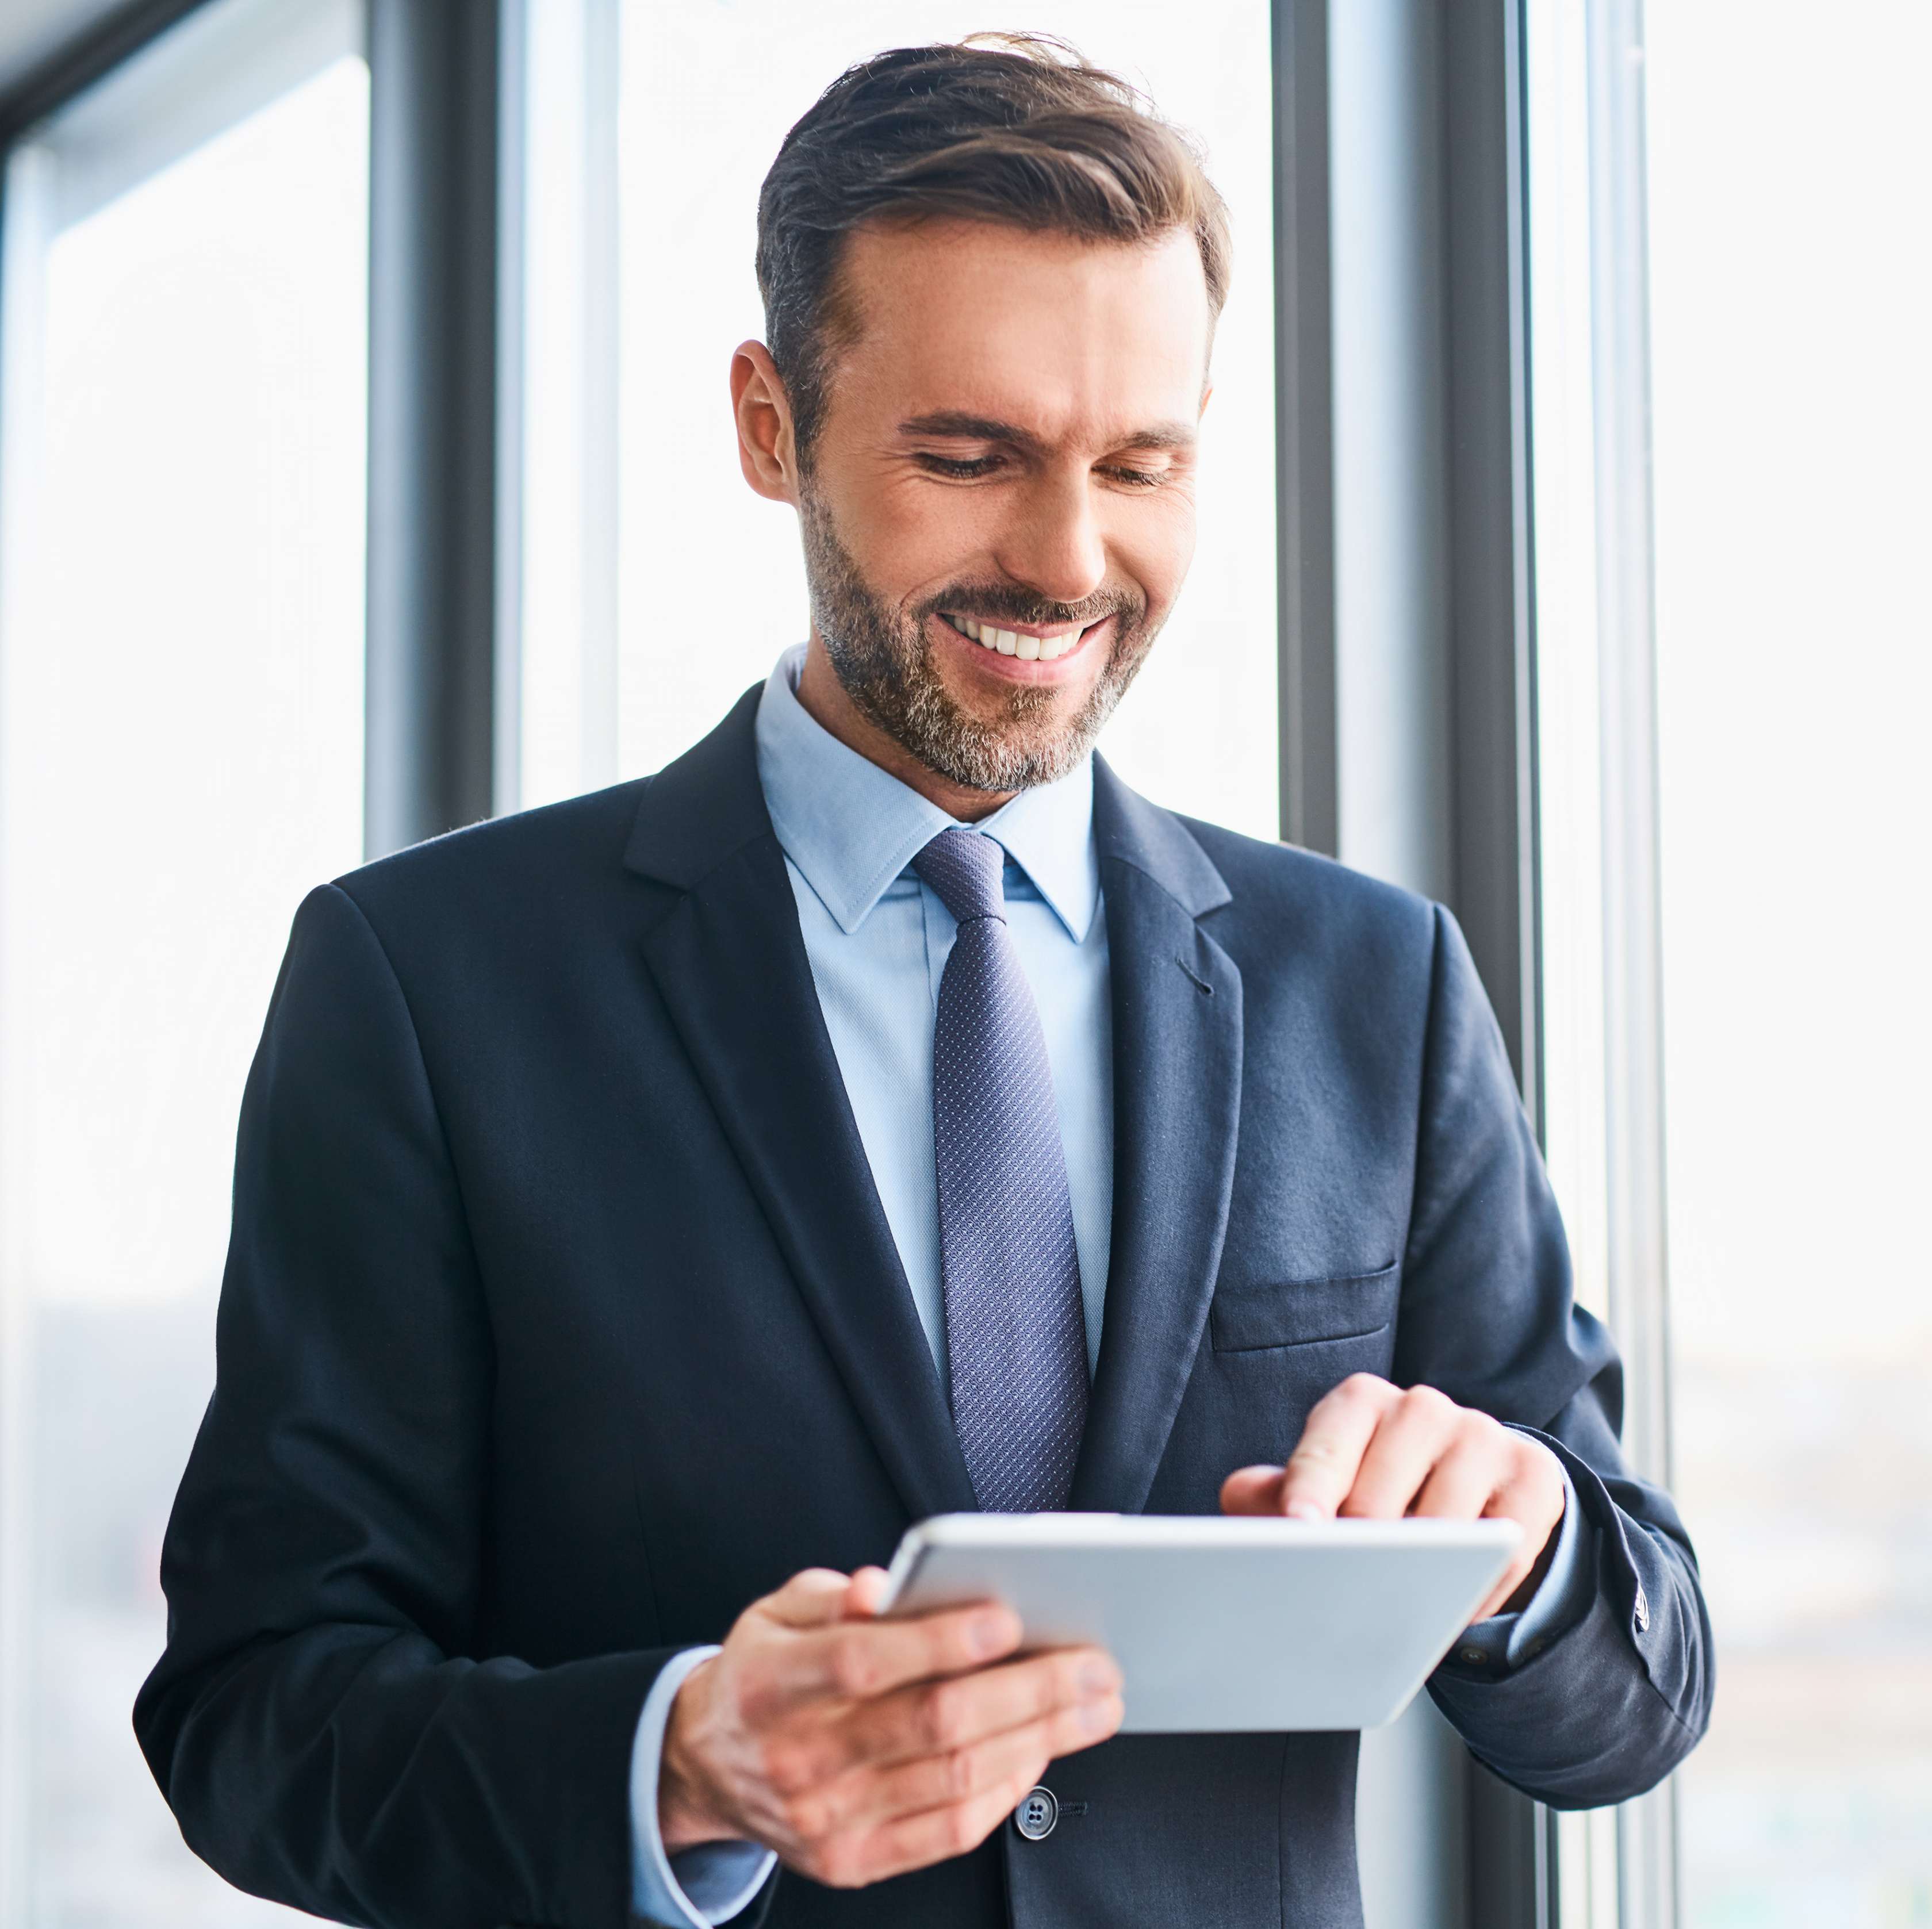 Ein Geschäftsmann mit Bart und blauem Anzug schaut lächelnd auf ein Tablet, das er in der Hand hält